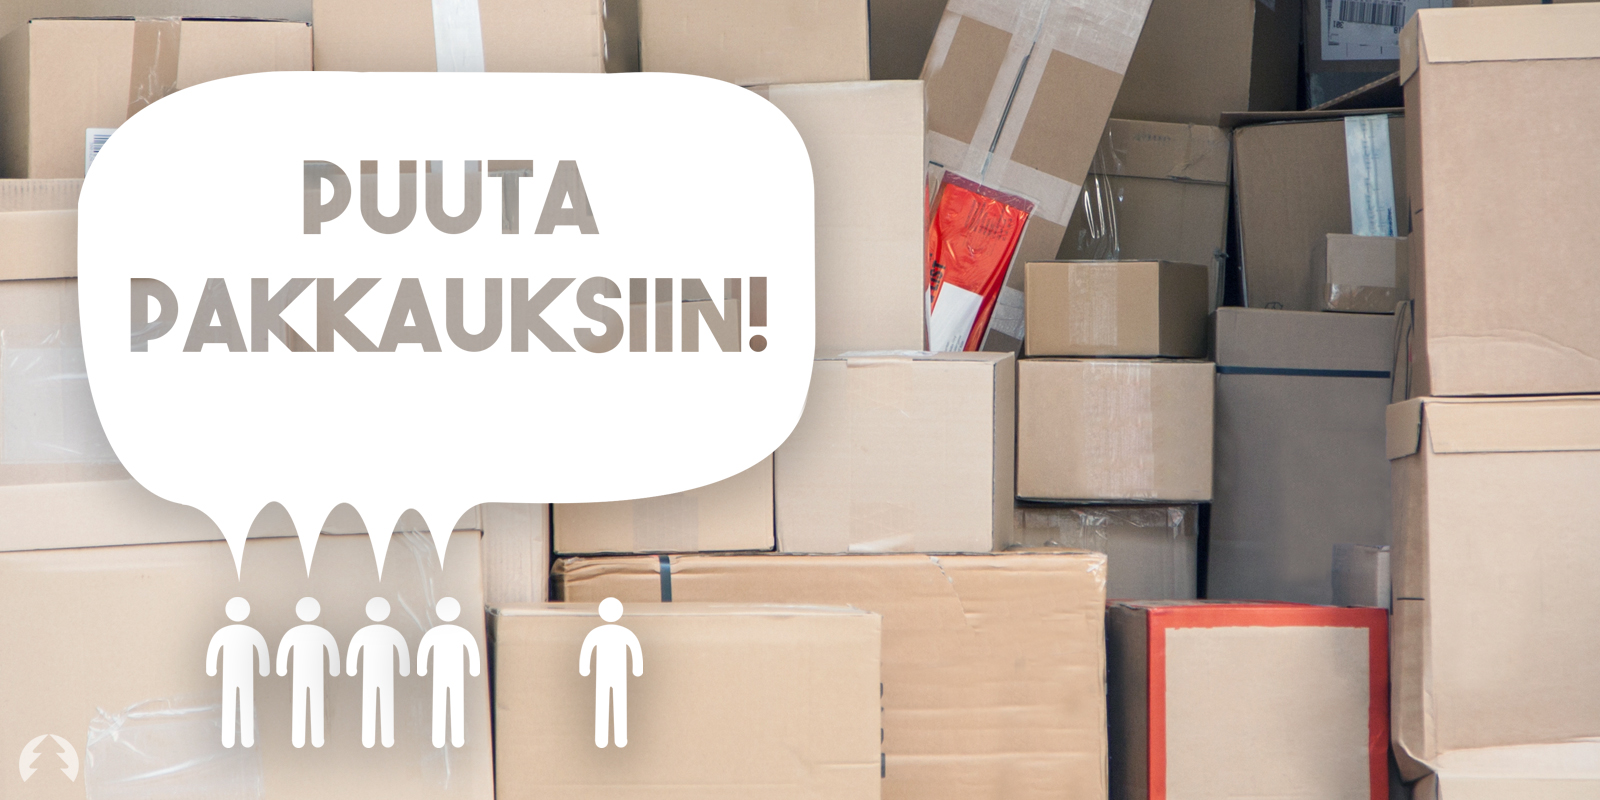 Neljä viidestä suomalaisesta suhtautuu vähintään melko myönteisesti pakkausten muovin korvaamiseen nykyistä suuremmalla puunkäytöllä. Kuva: Vilma Issakainen